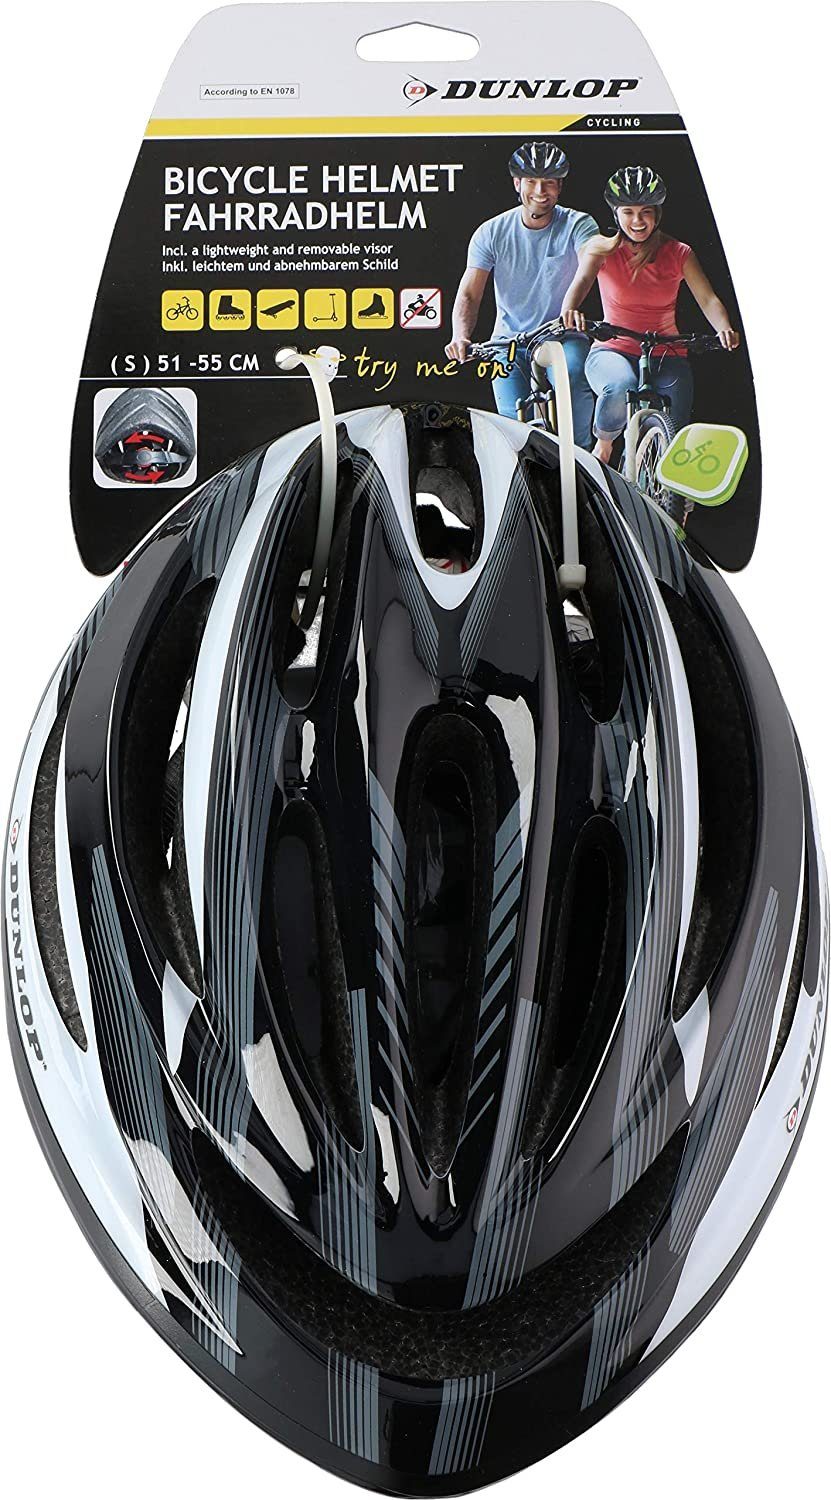 habeig Fahrradhelm »Fahrradhelm Dunlop M - 55-58cmHerren, Damen & Kinder  EPS Innenschale Abnehmbares Visier für optimalen Blendschutz MTB City Bike  Helm Schnellverschluss sehr leicht Modell HB13« online kaufen | OTTO